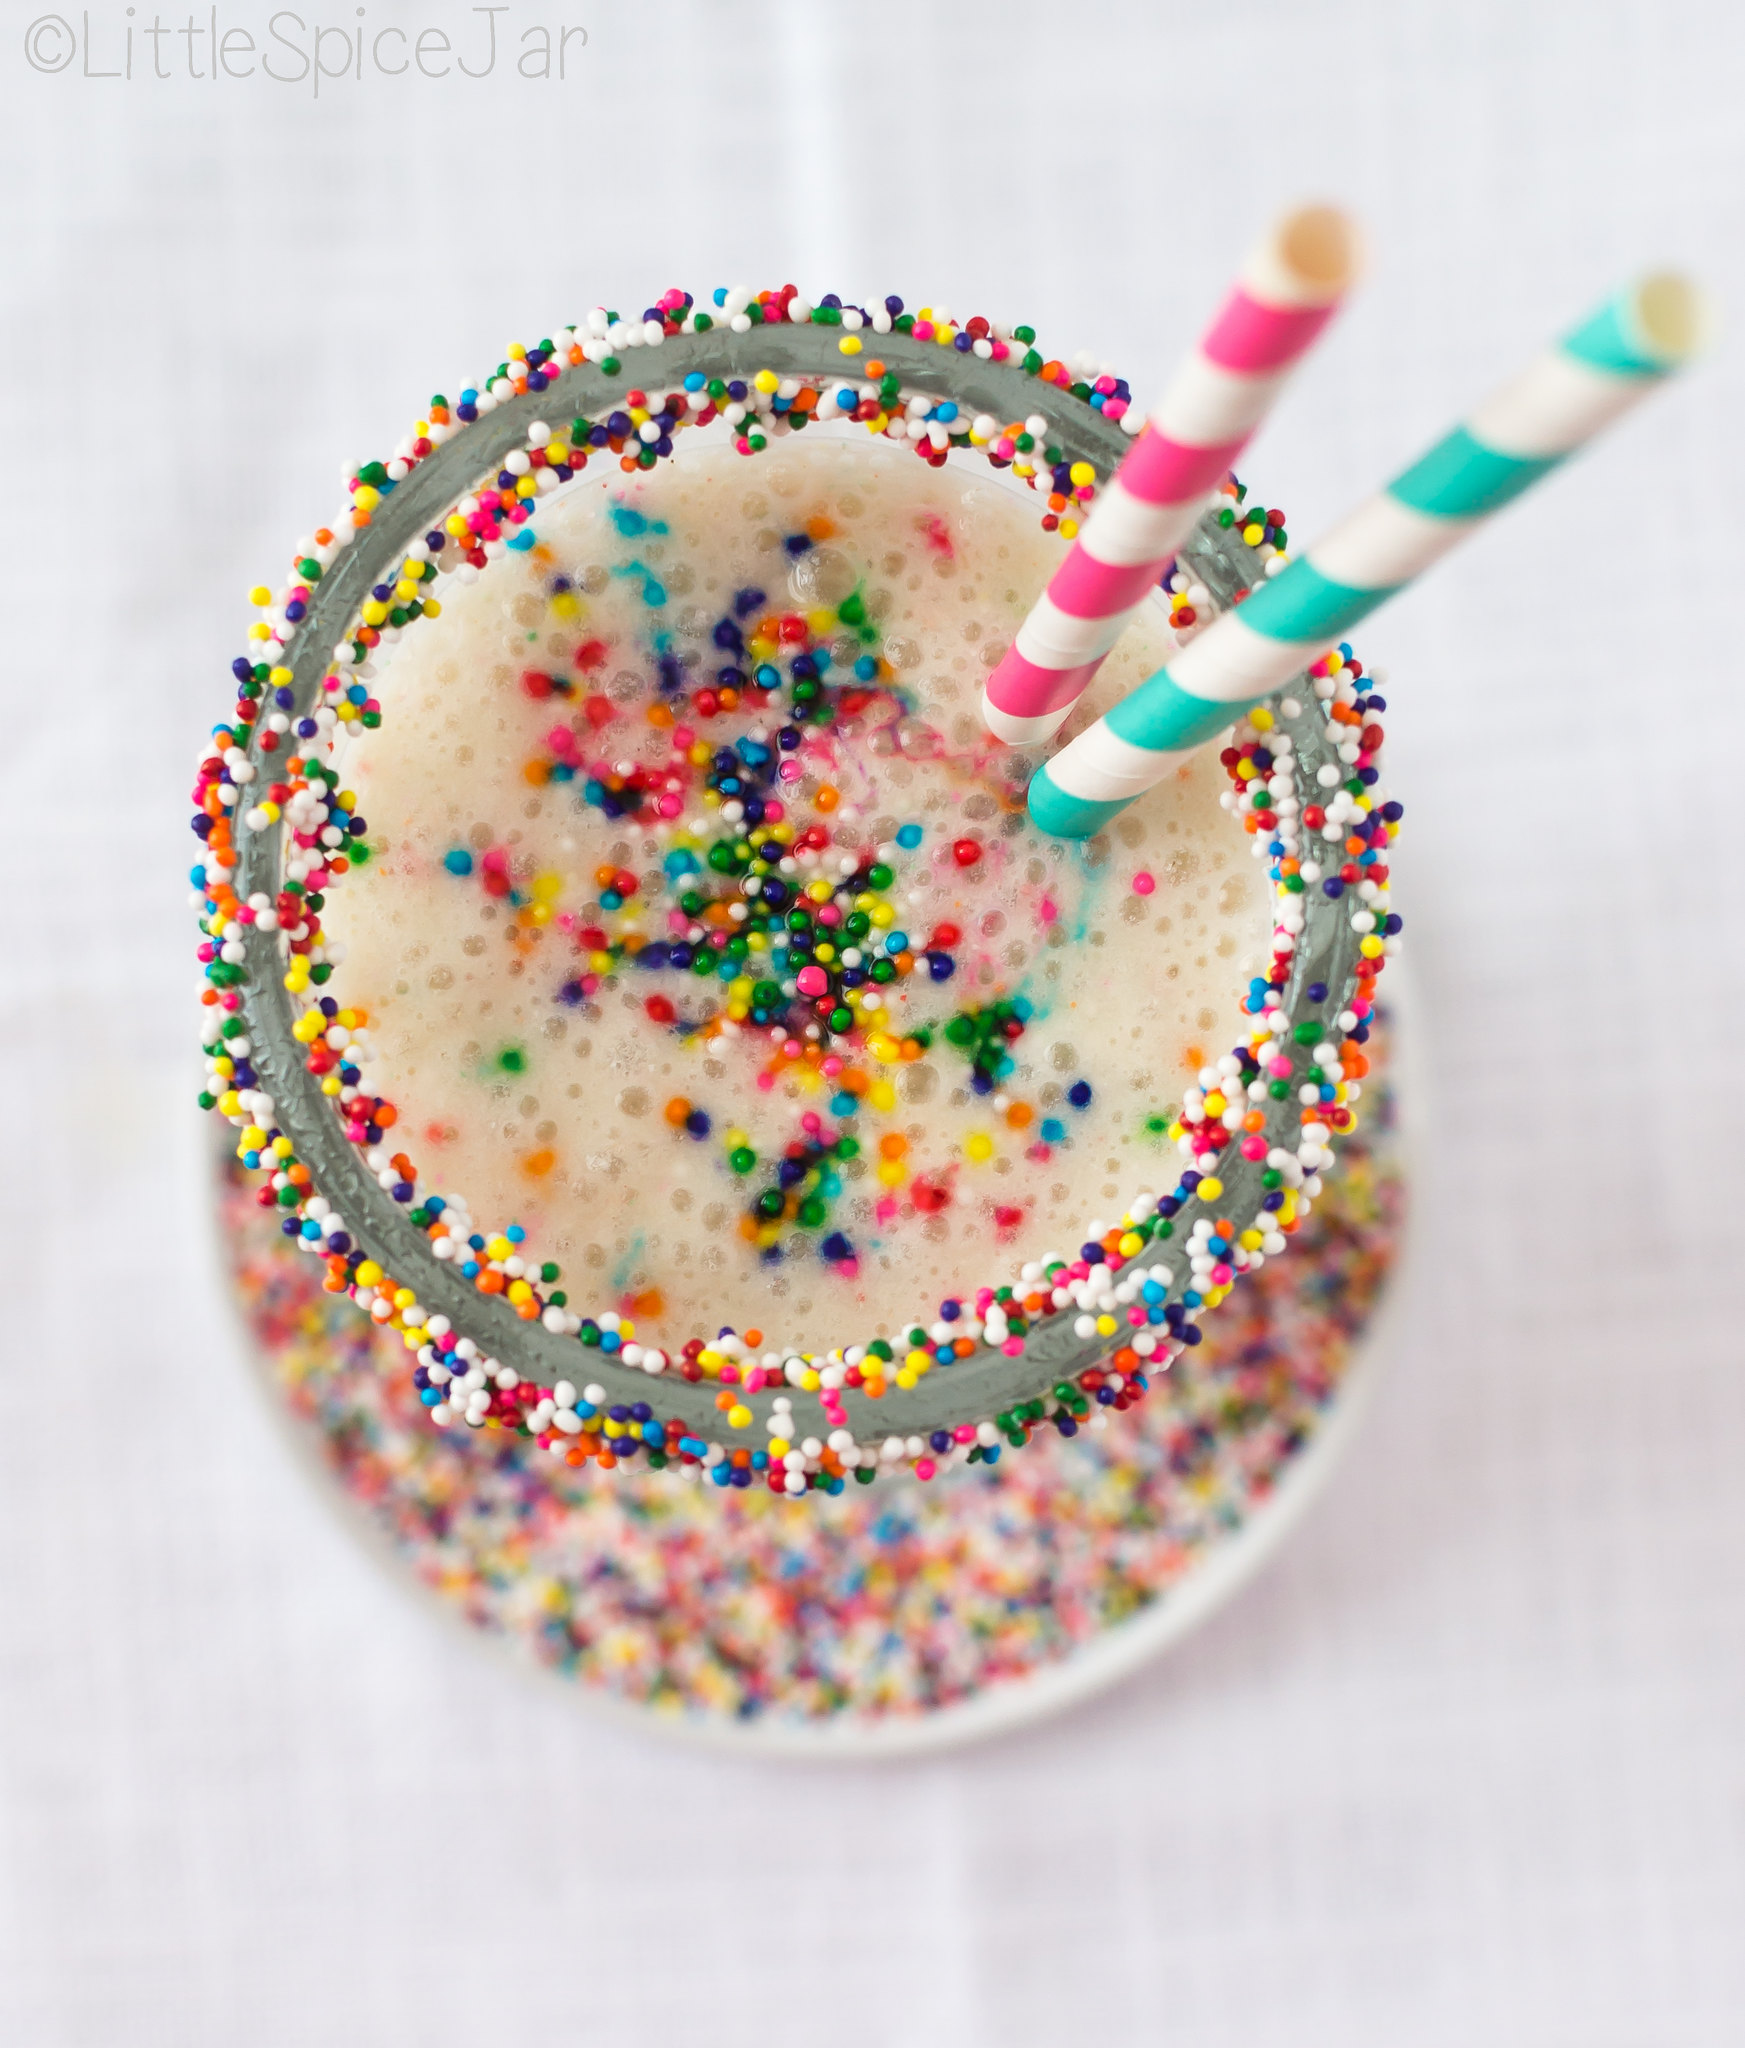 Sprinkles on Funfetti Cake Batter Milkshake